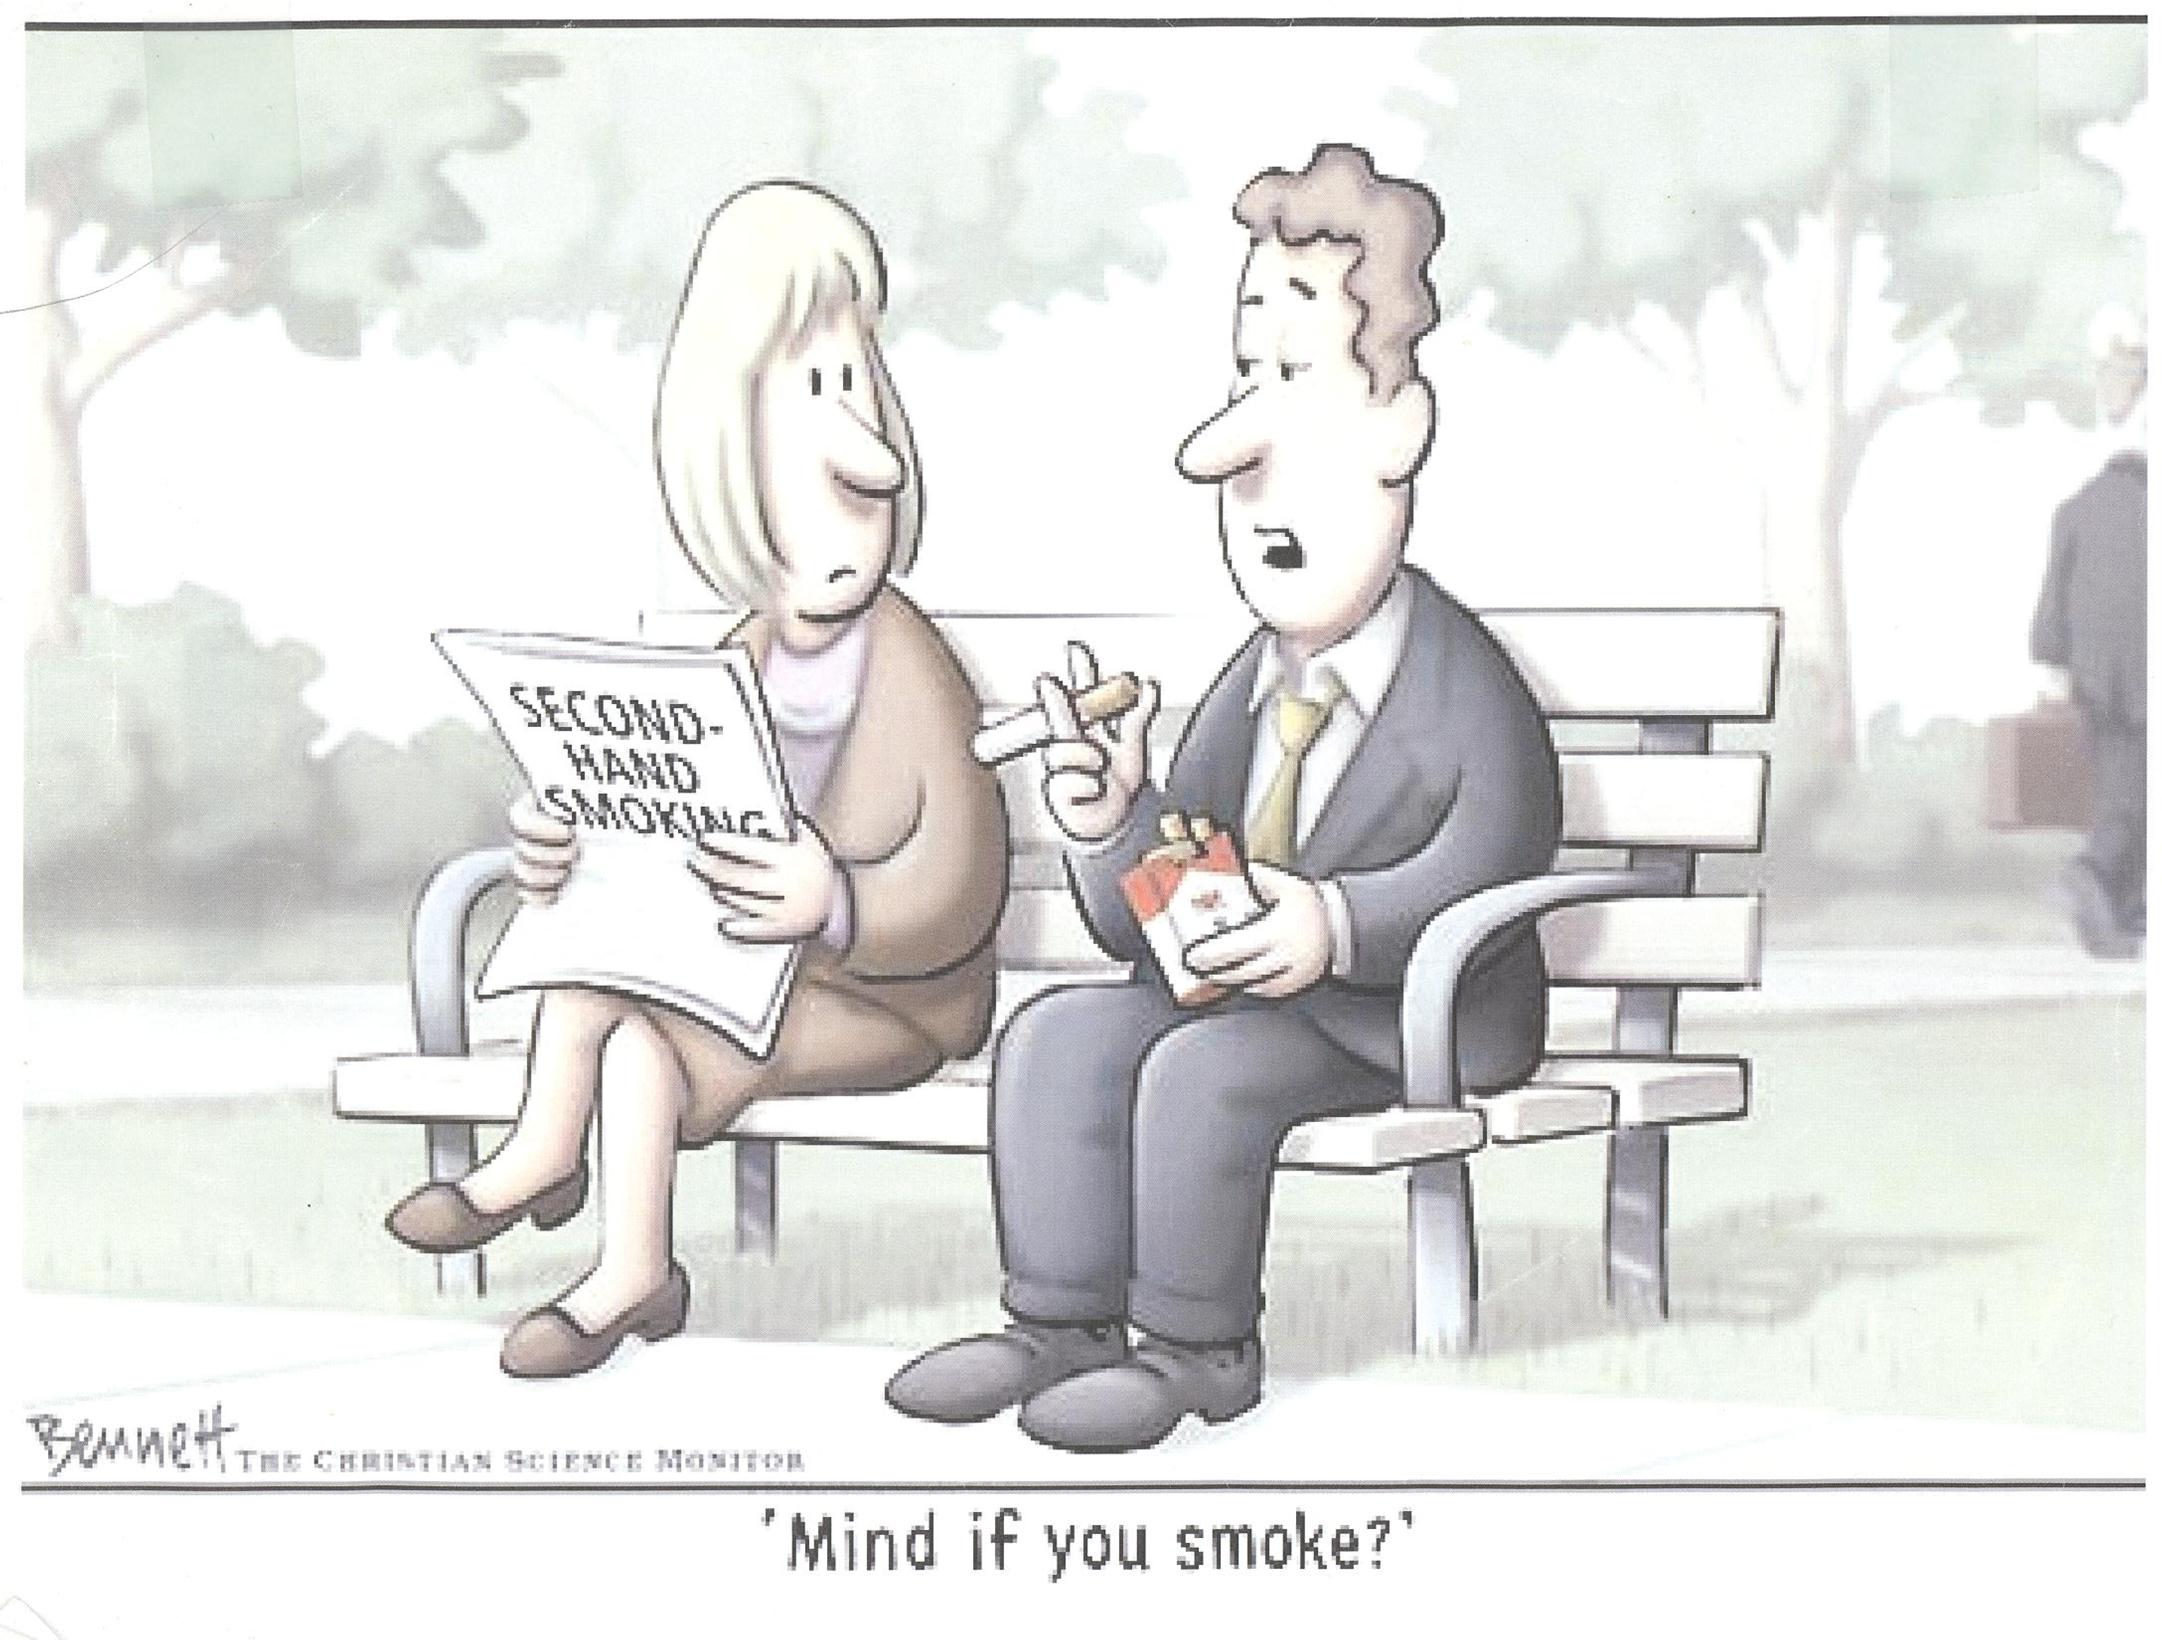 REMOVE CIGARETTE SMOKE